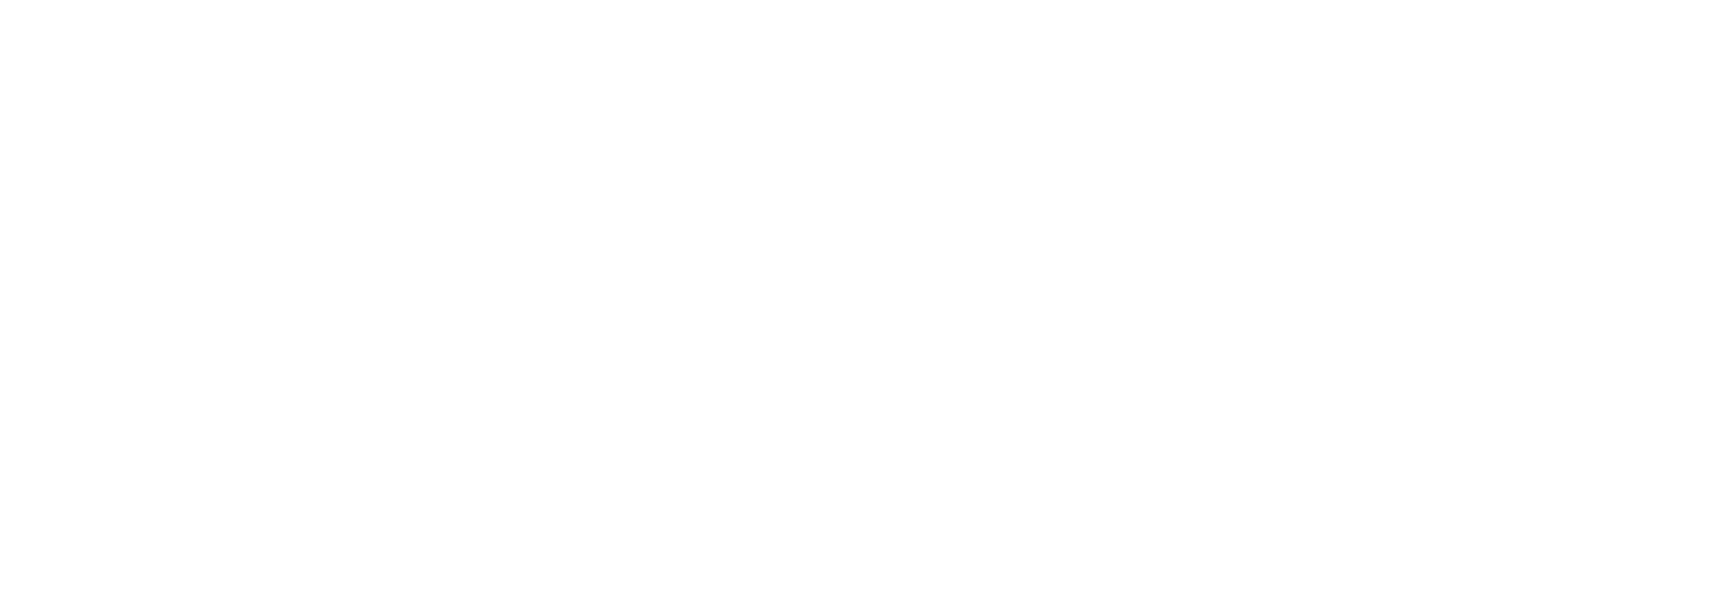 Get Involved, Sponsorships